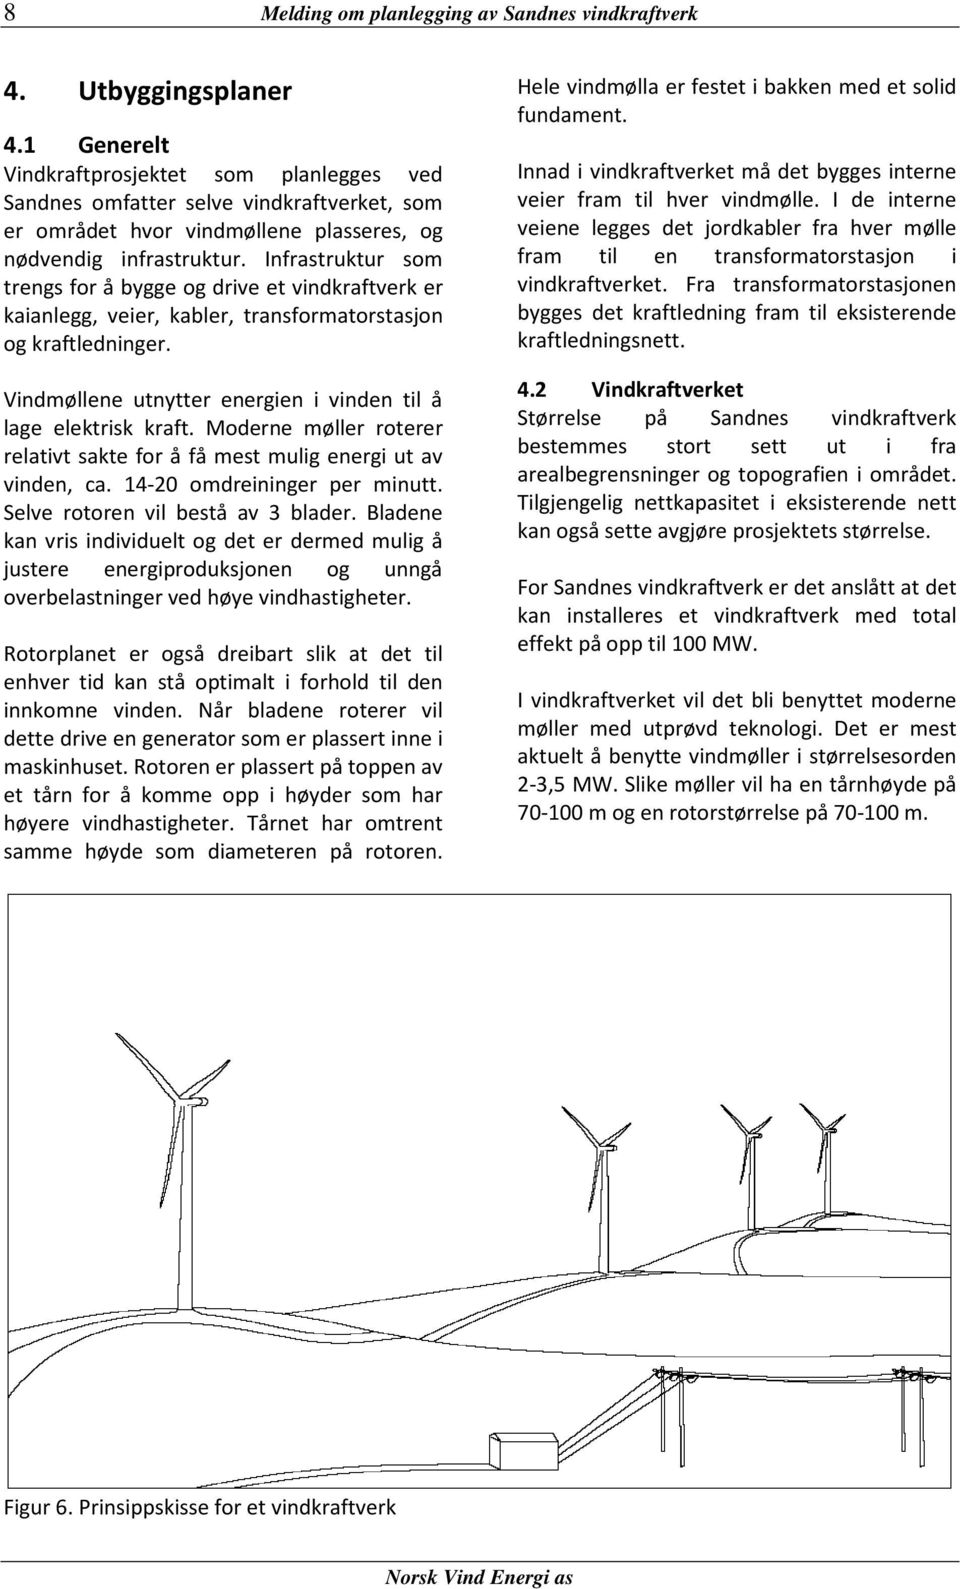 Infrastruktur som trengs for å bygge og drive et vindkraftverk er kaianlegg, veier, kabler, transformatorstasjon og kraftledninger. Vindmøllene utnytter energien i vinden til å lage elektrisk kraft.